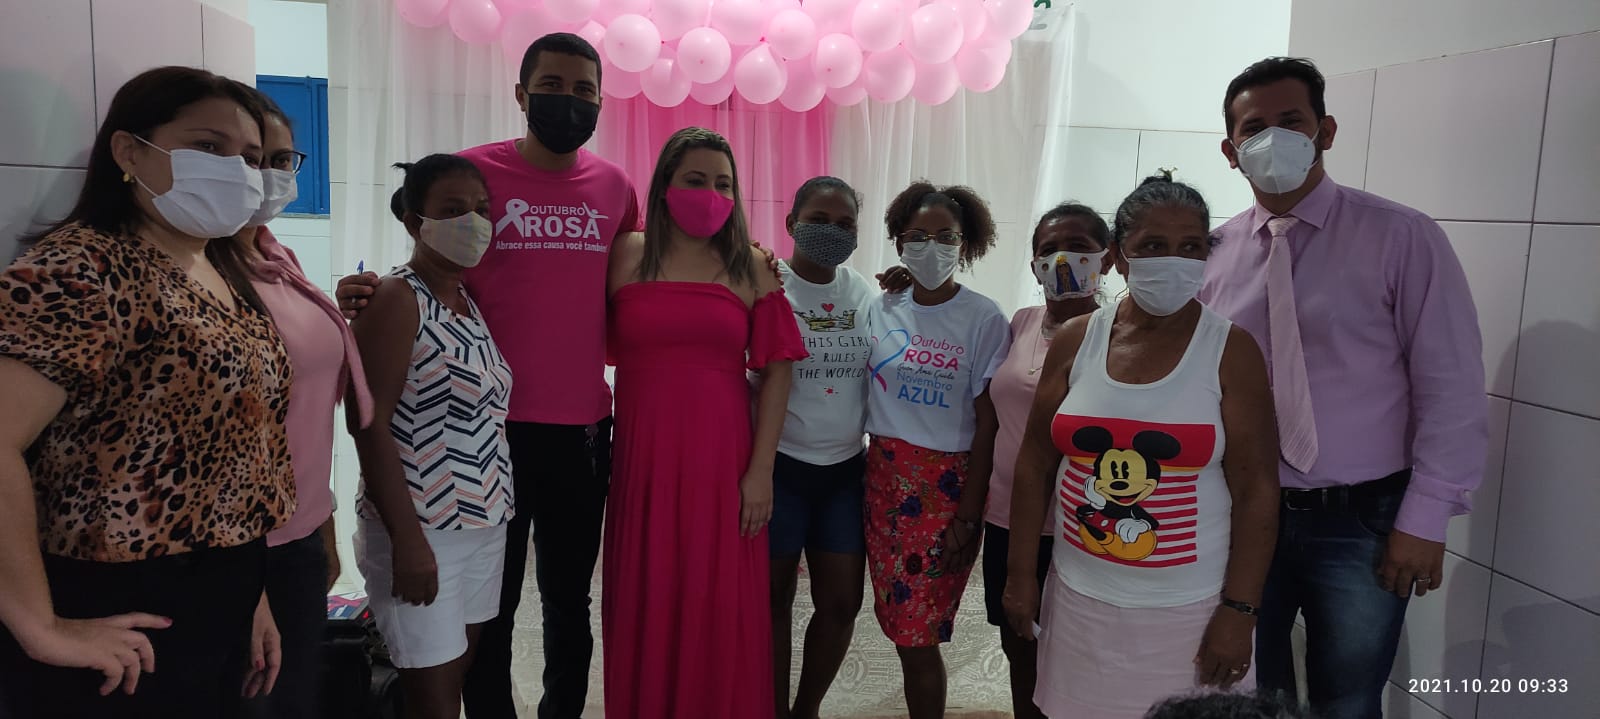 Secretaria de Saúde de Lagoinha intensifica Campanha Outubro Rosa na Cidade - Imagem 3